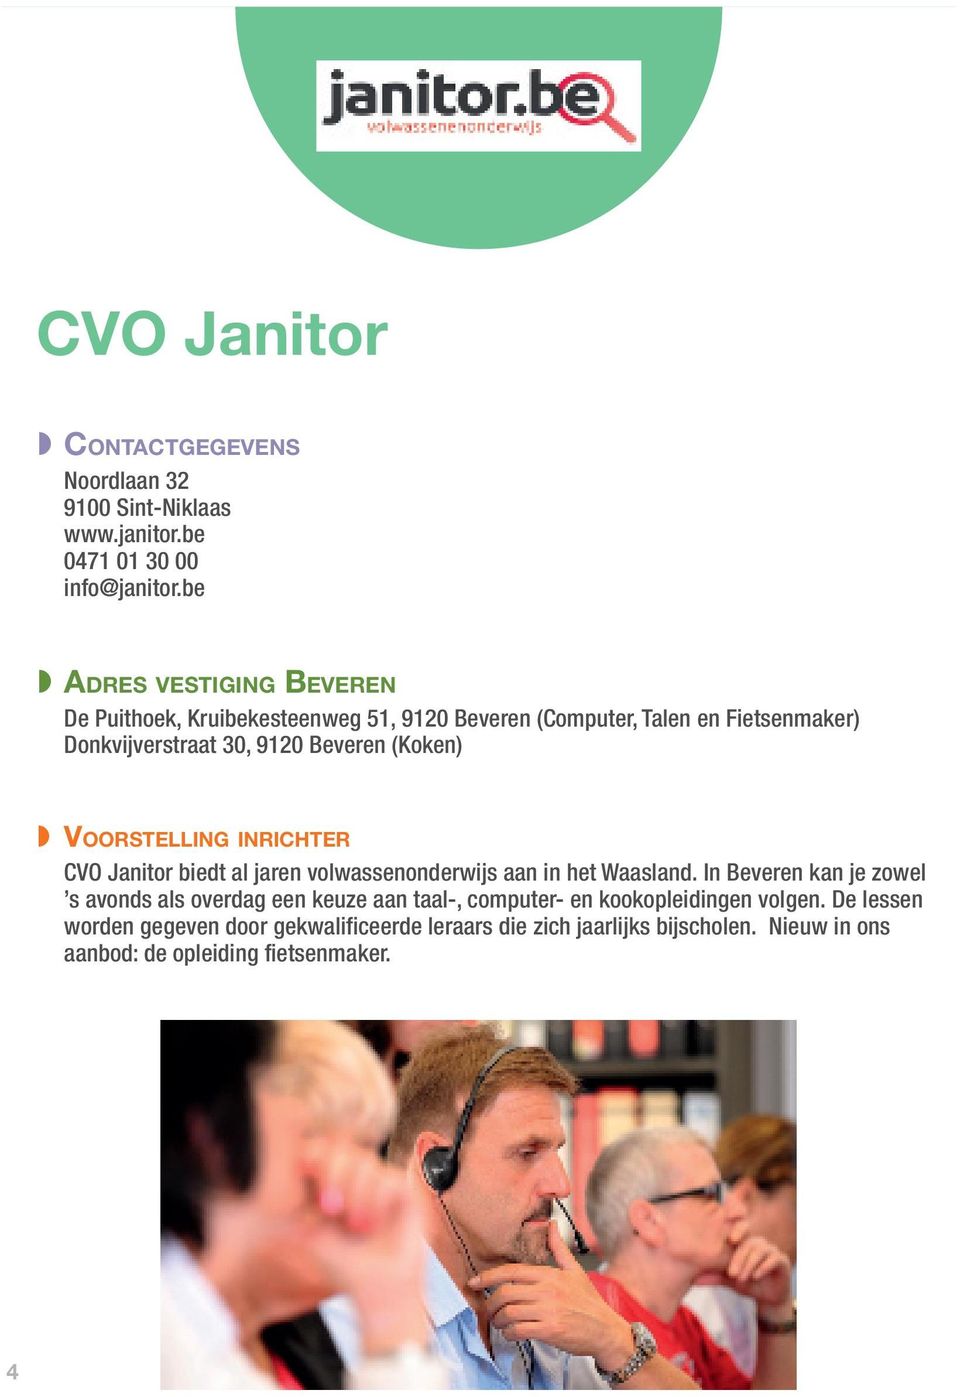 (Koken) Voorstelling inrichter CVO Janitor biedt al jaren volwassenonderwijs aan in het Waasland.